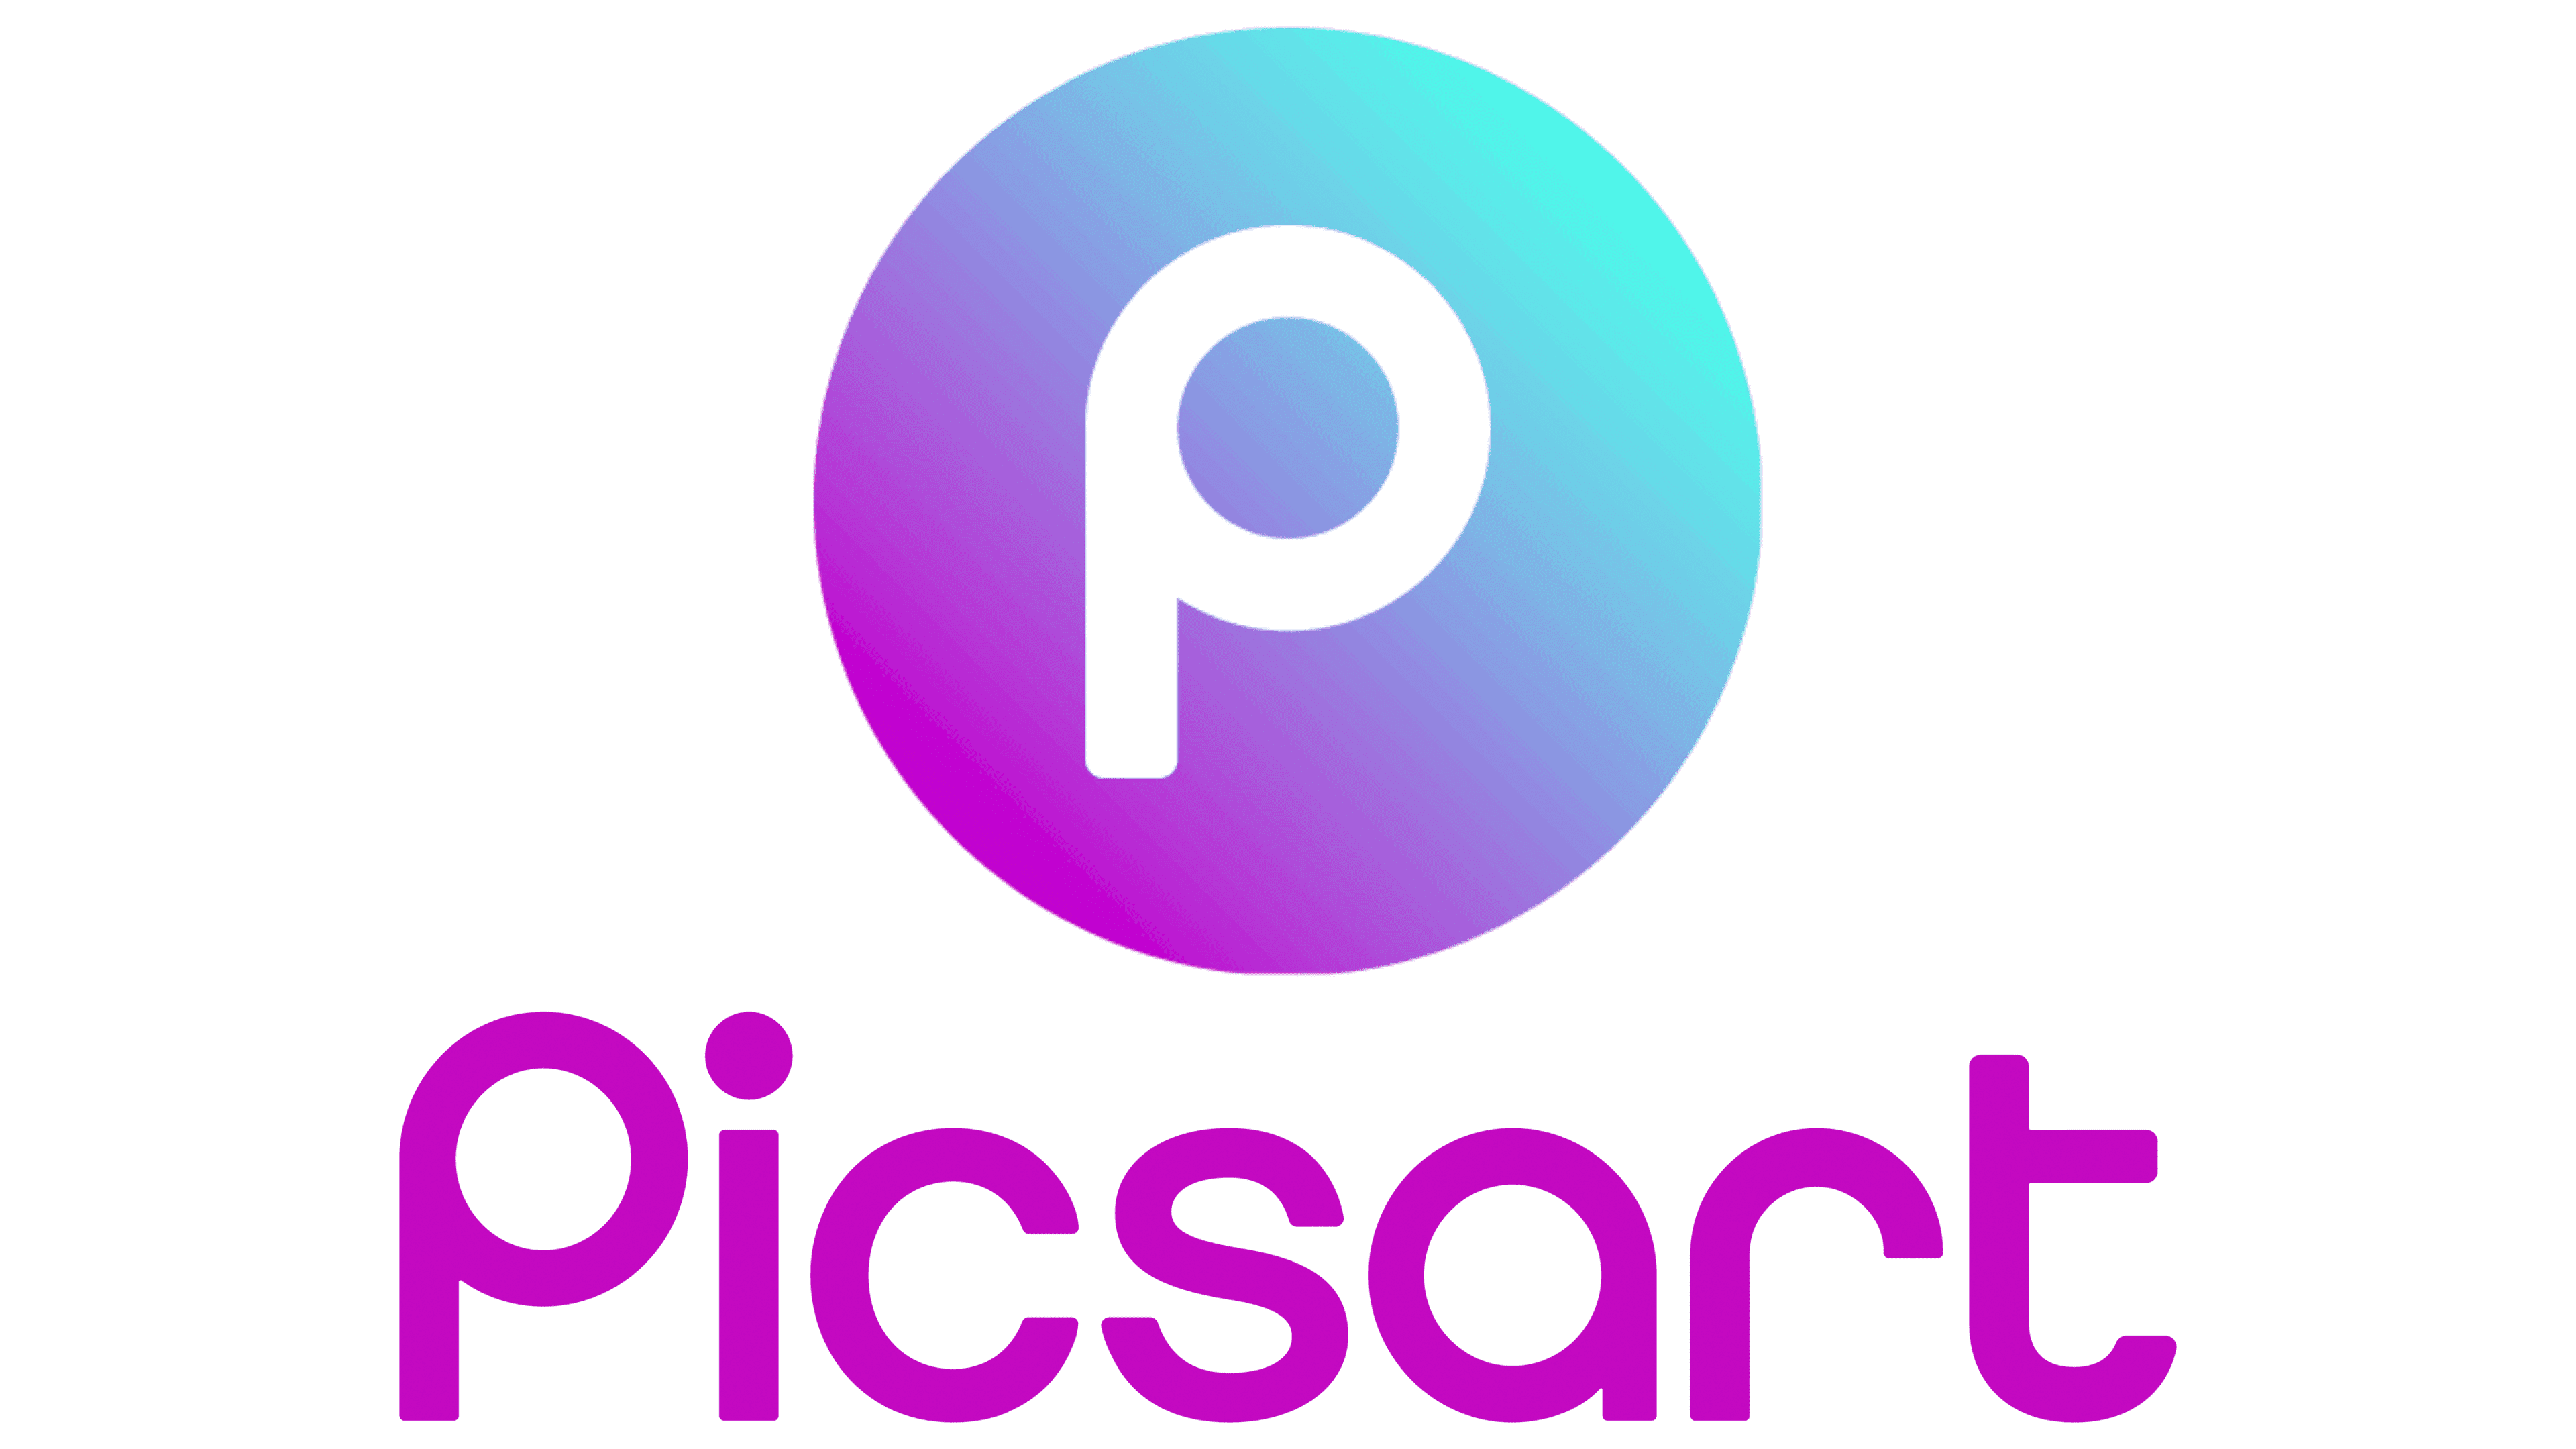 picsart logo png